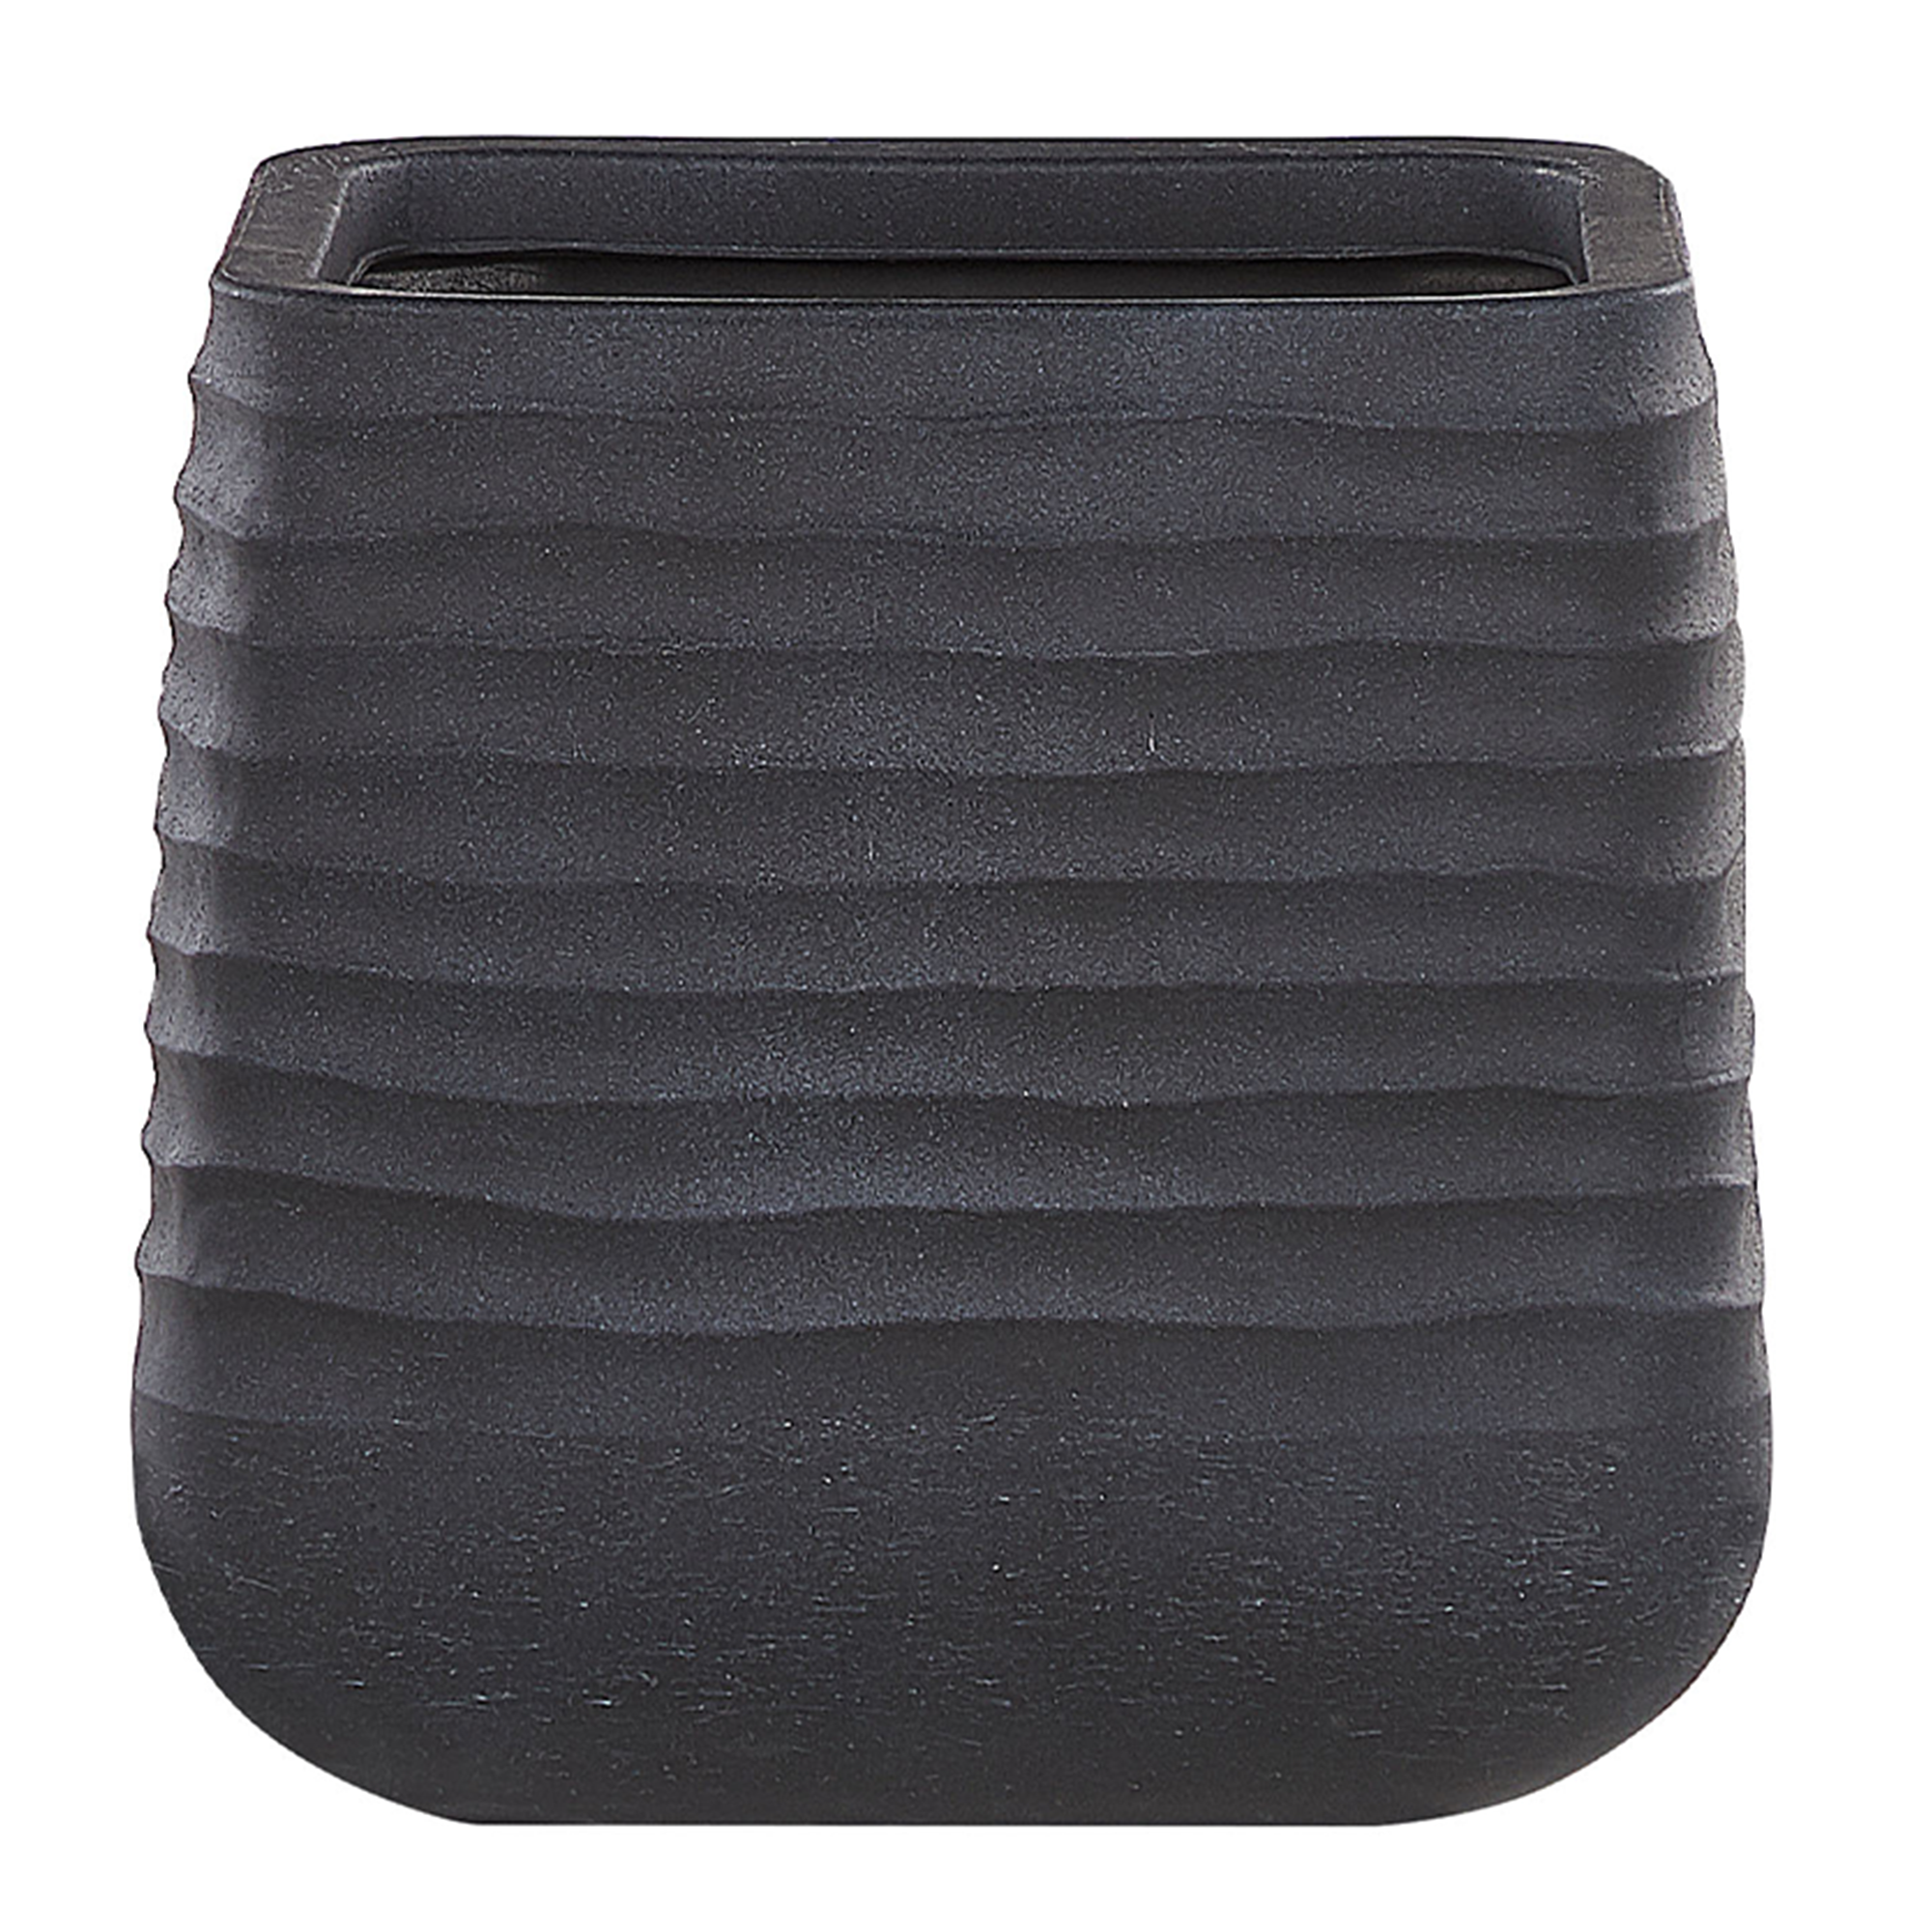 Beliani Vaso grande para exterior preto em mistura de pedra quadrado 38 x 38 x 37 cm resiste aos raios ultravioleta